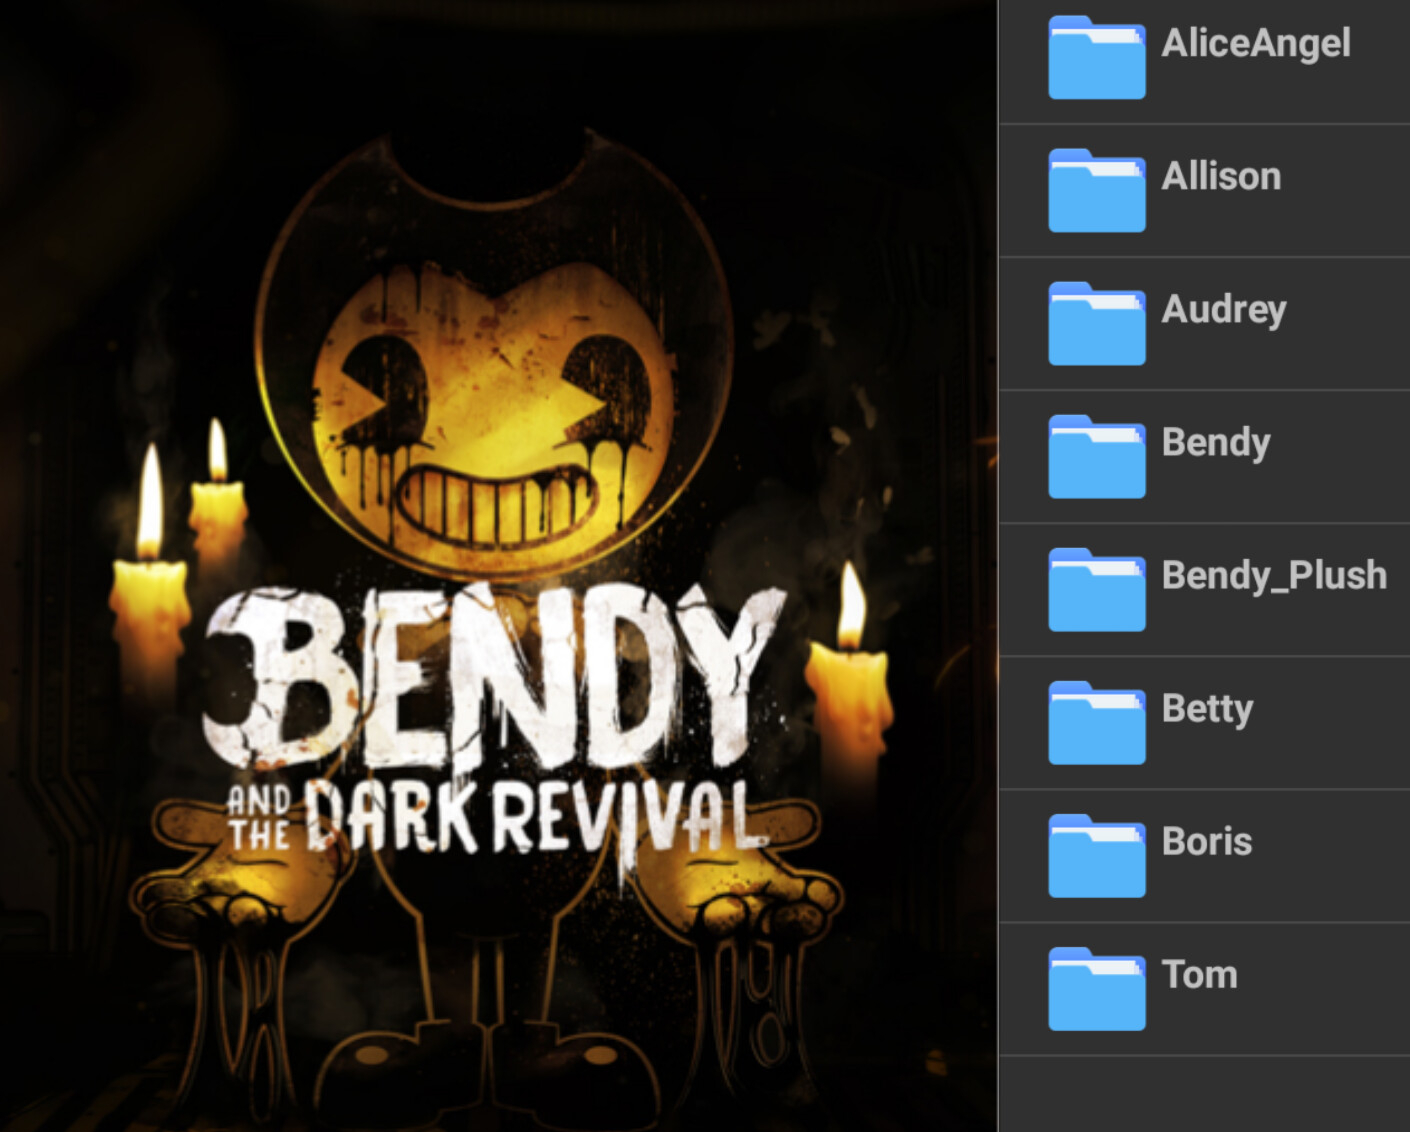 Ink Bendy (Dark Revival) Model Download MMD by waleedtariqmmd on DeviantArt